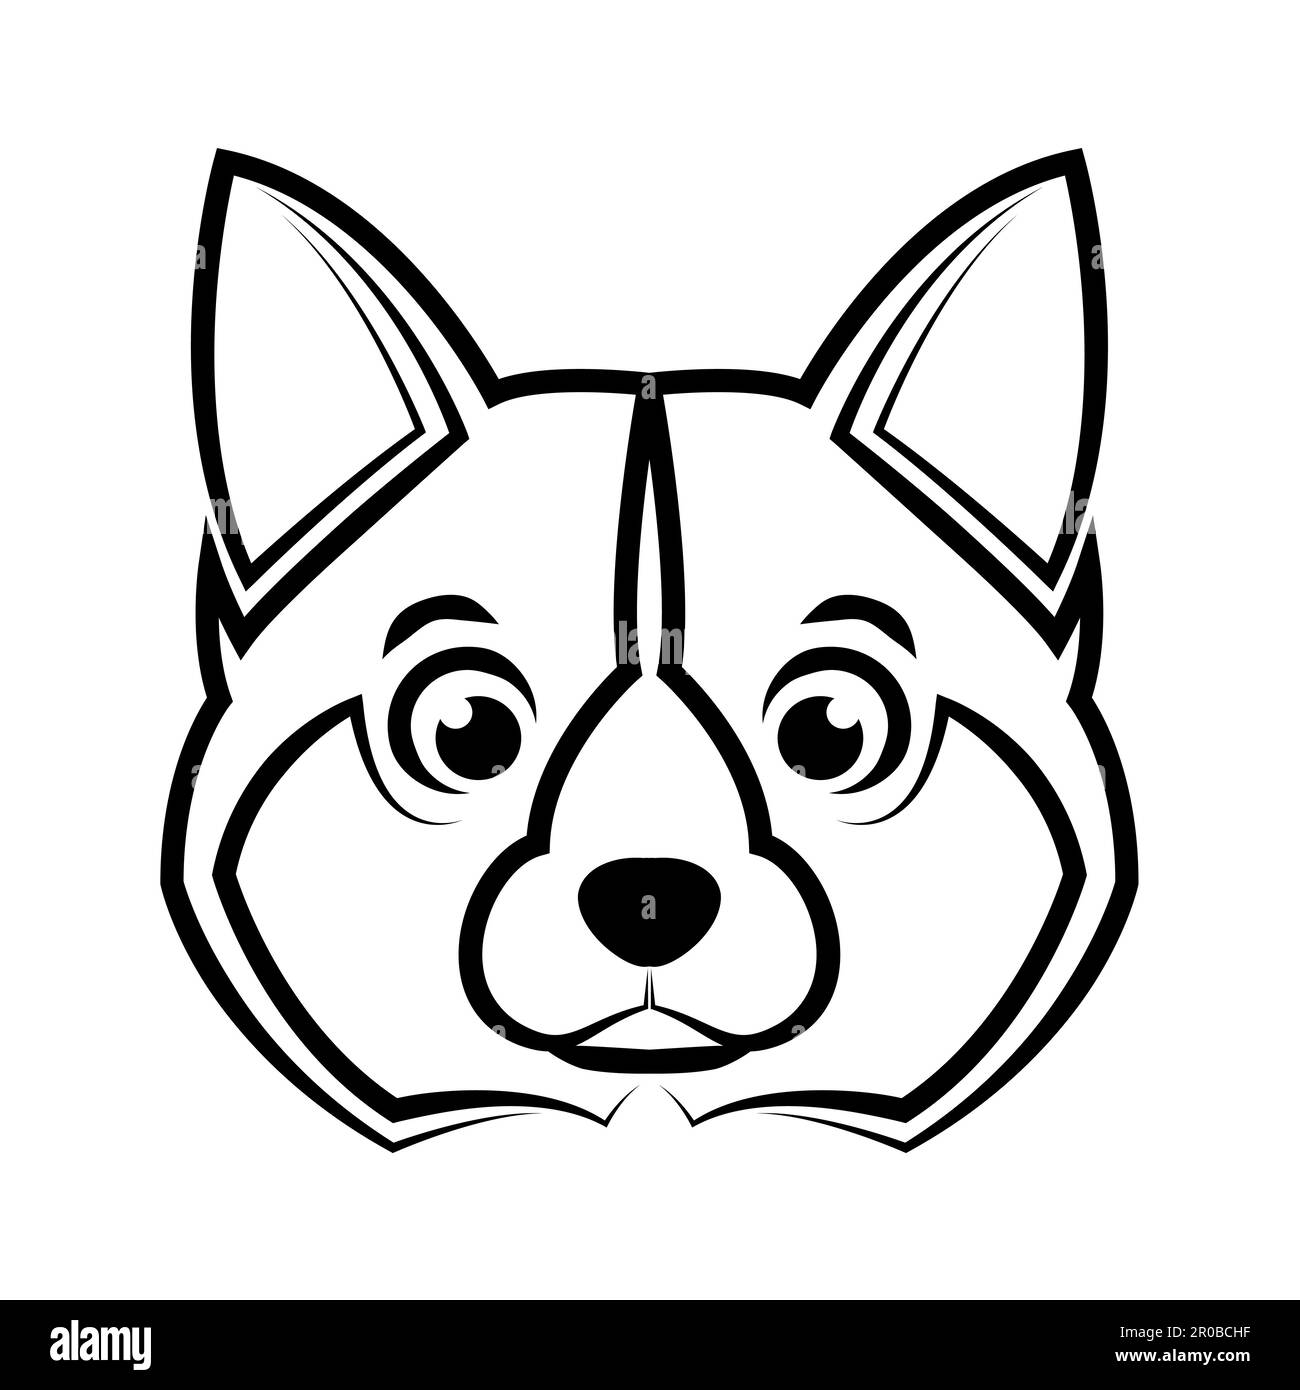 Art de la ligne noire et blanche de la tête de chien shiba. Bon usage pour symbole, mascotte, icône, avatar, tatouage, T-shirt design, logo ou tout autre design. Illustration de Vecteur